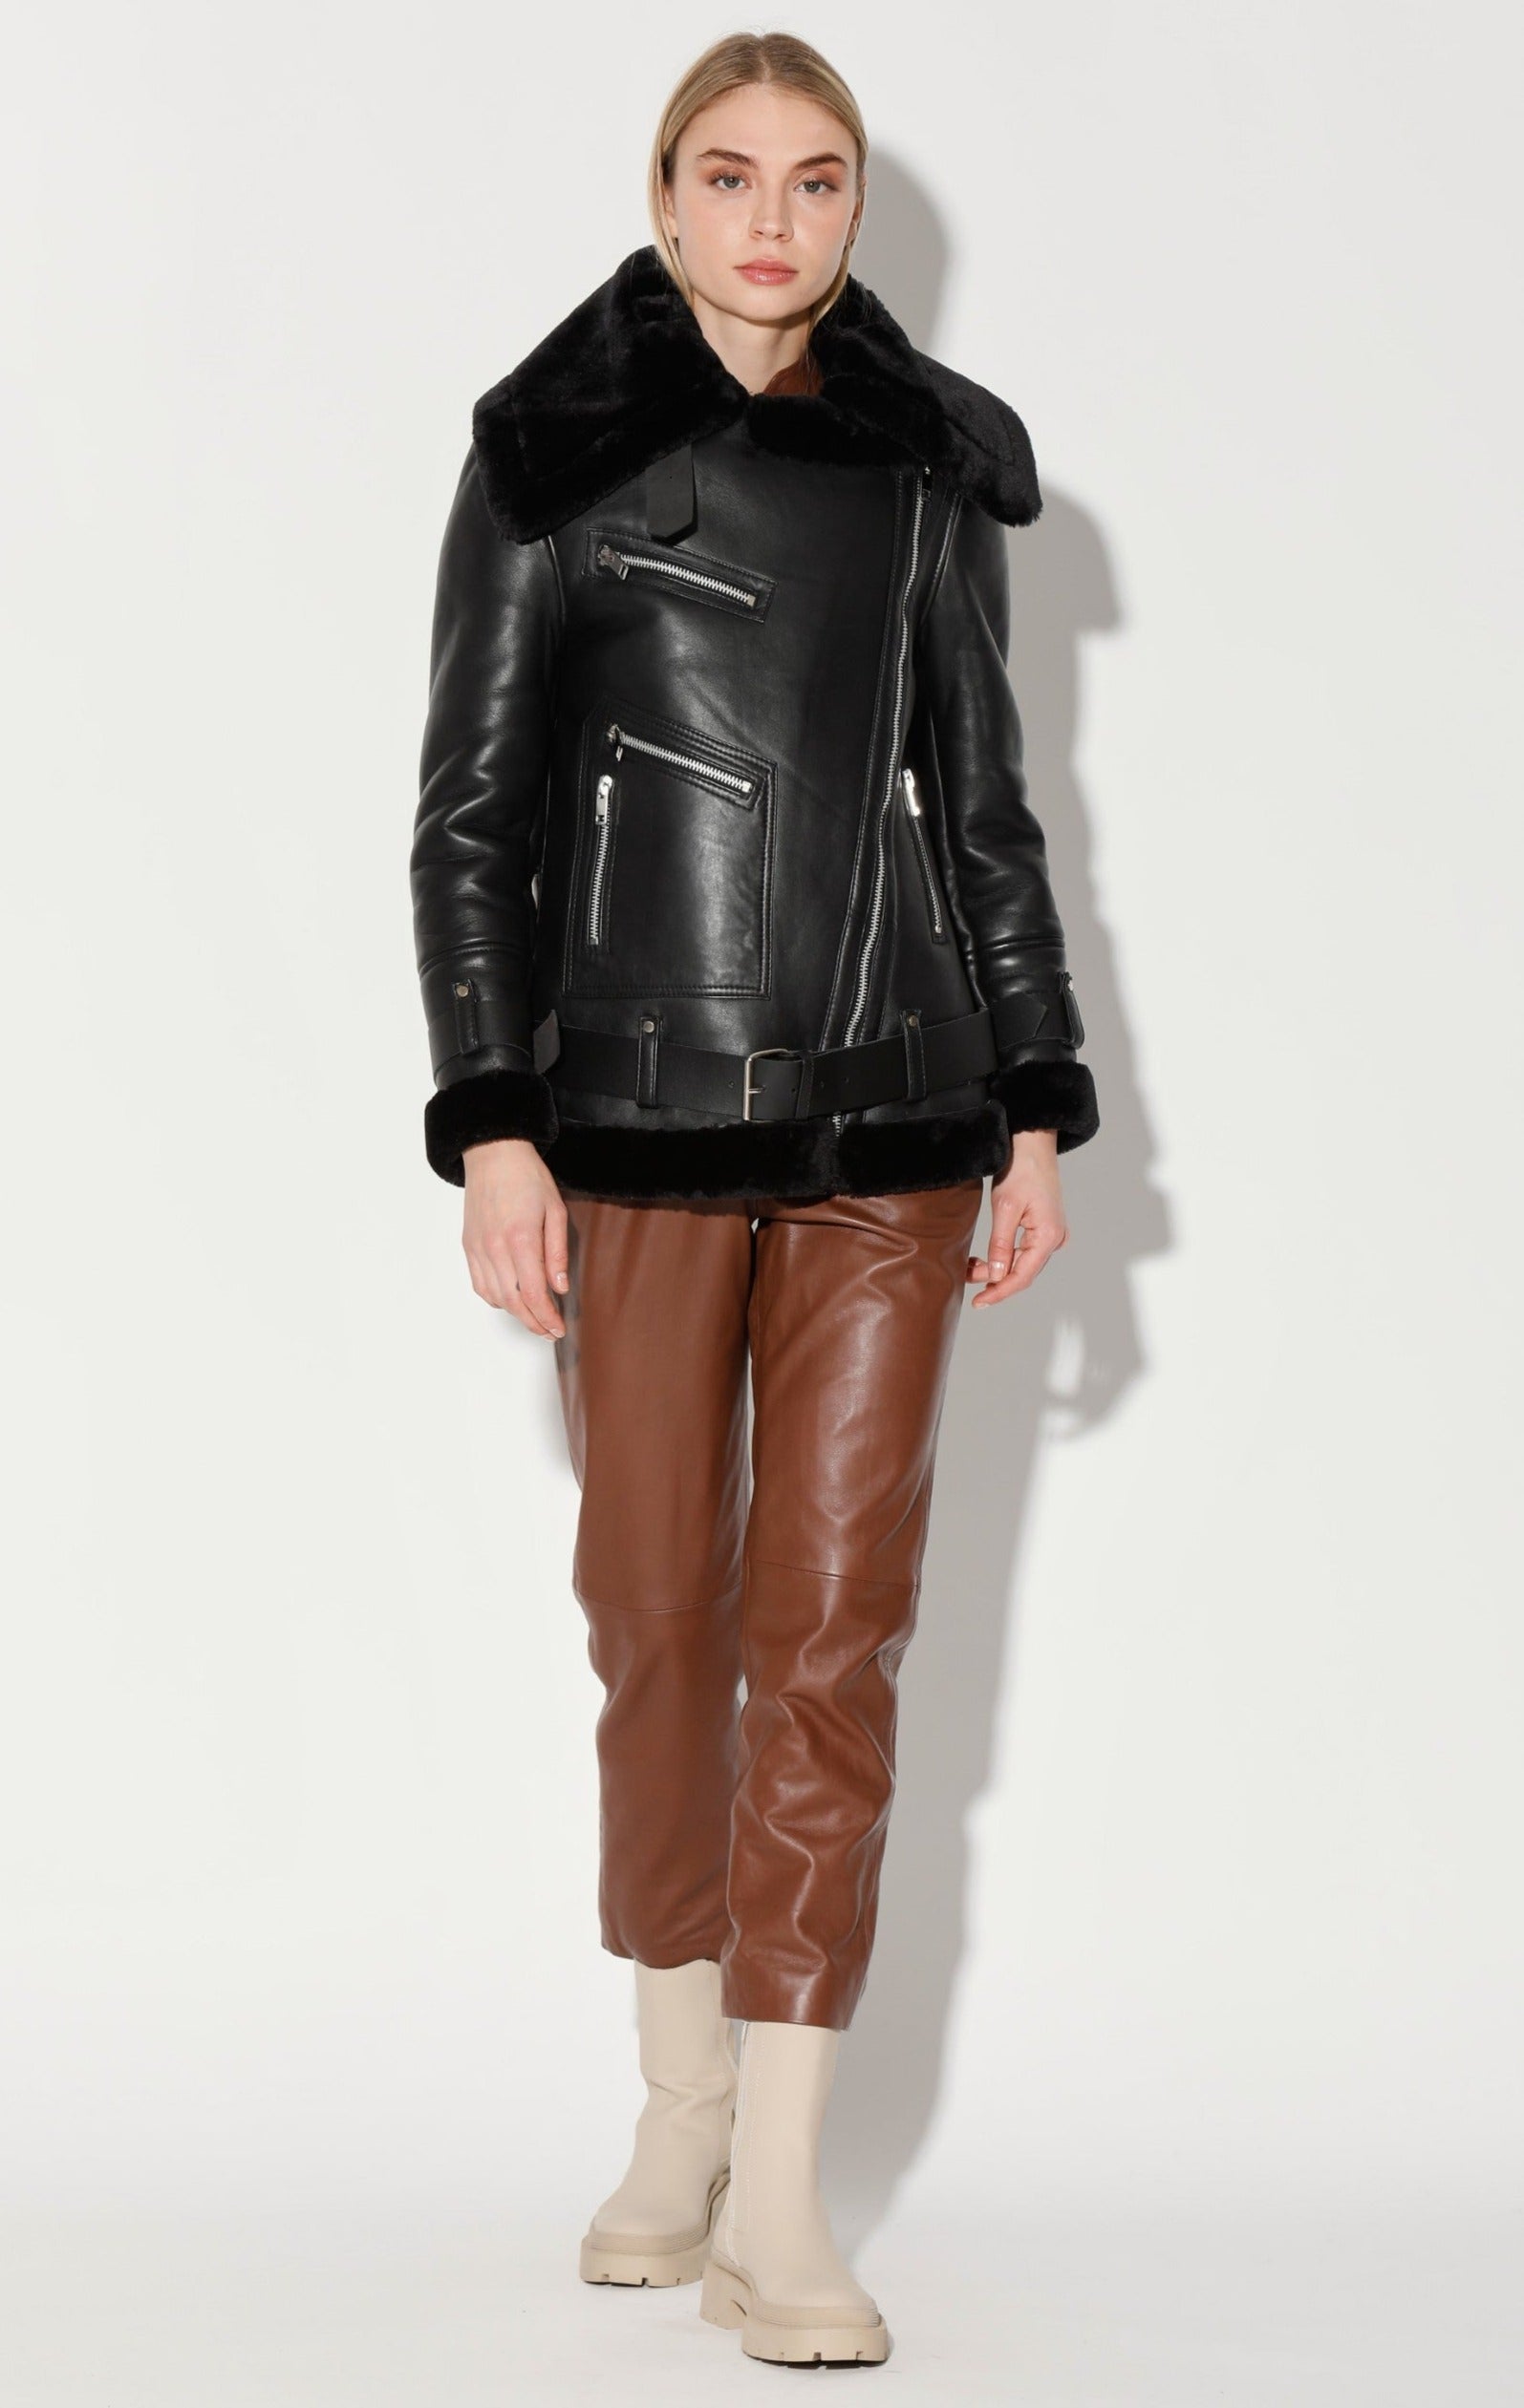 Celine Jacket, Black Leather/ Black Fur by Walter Baker